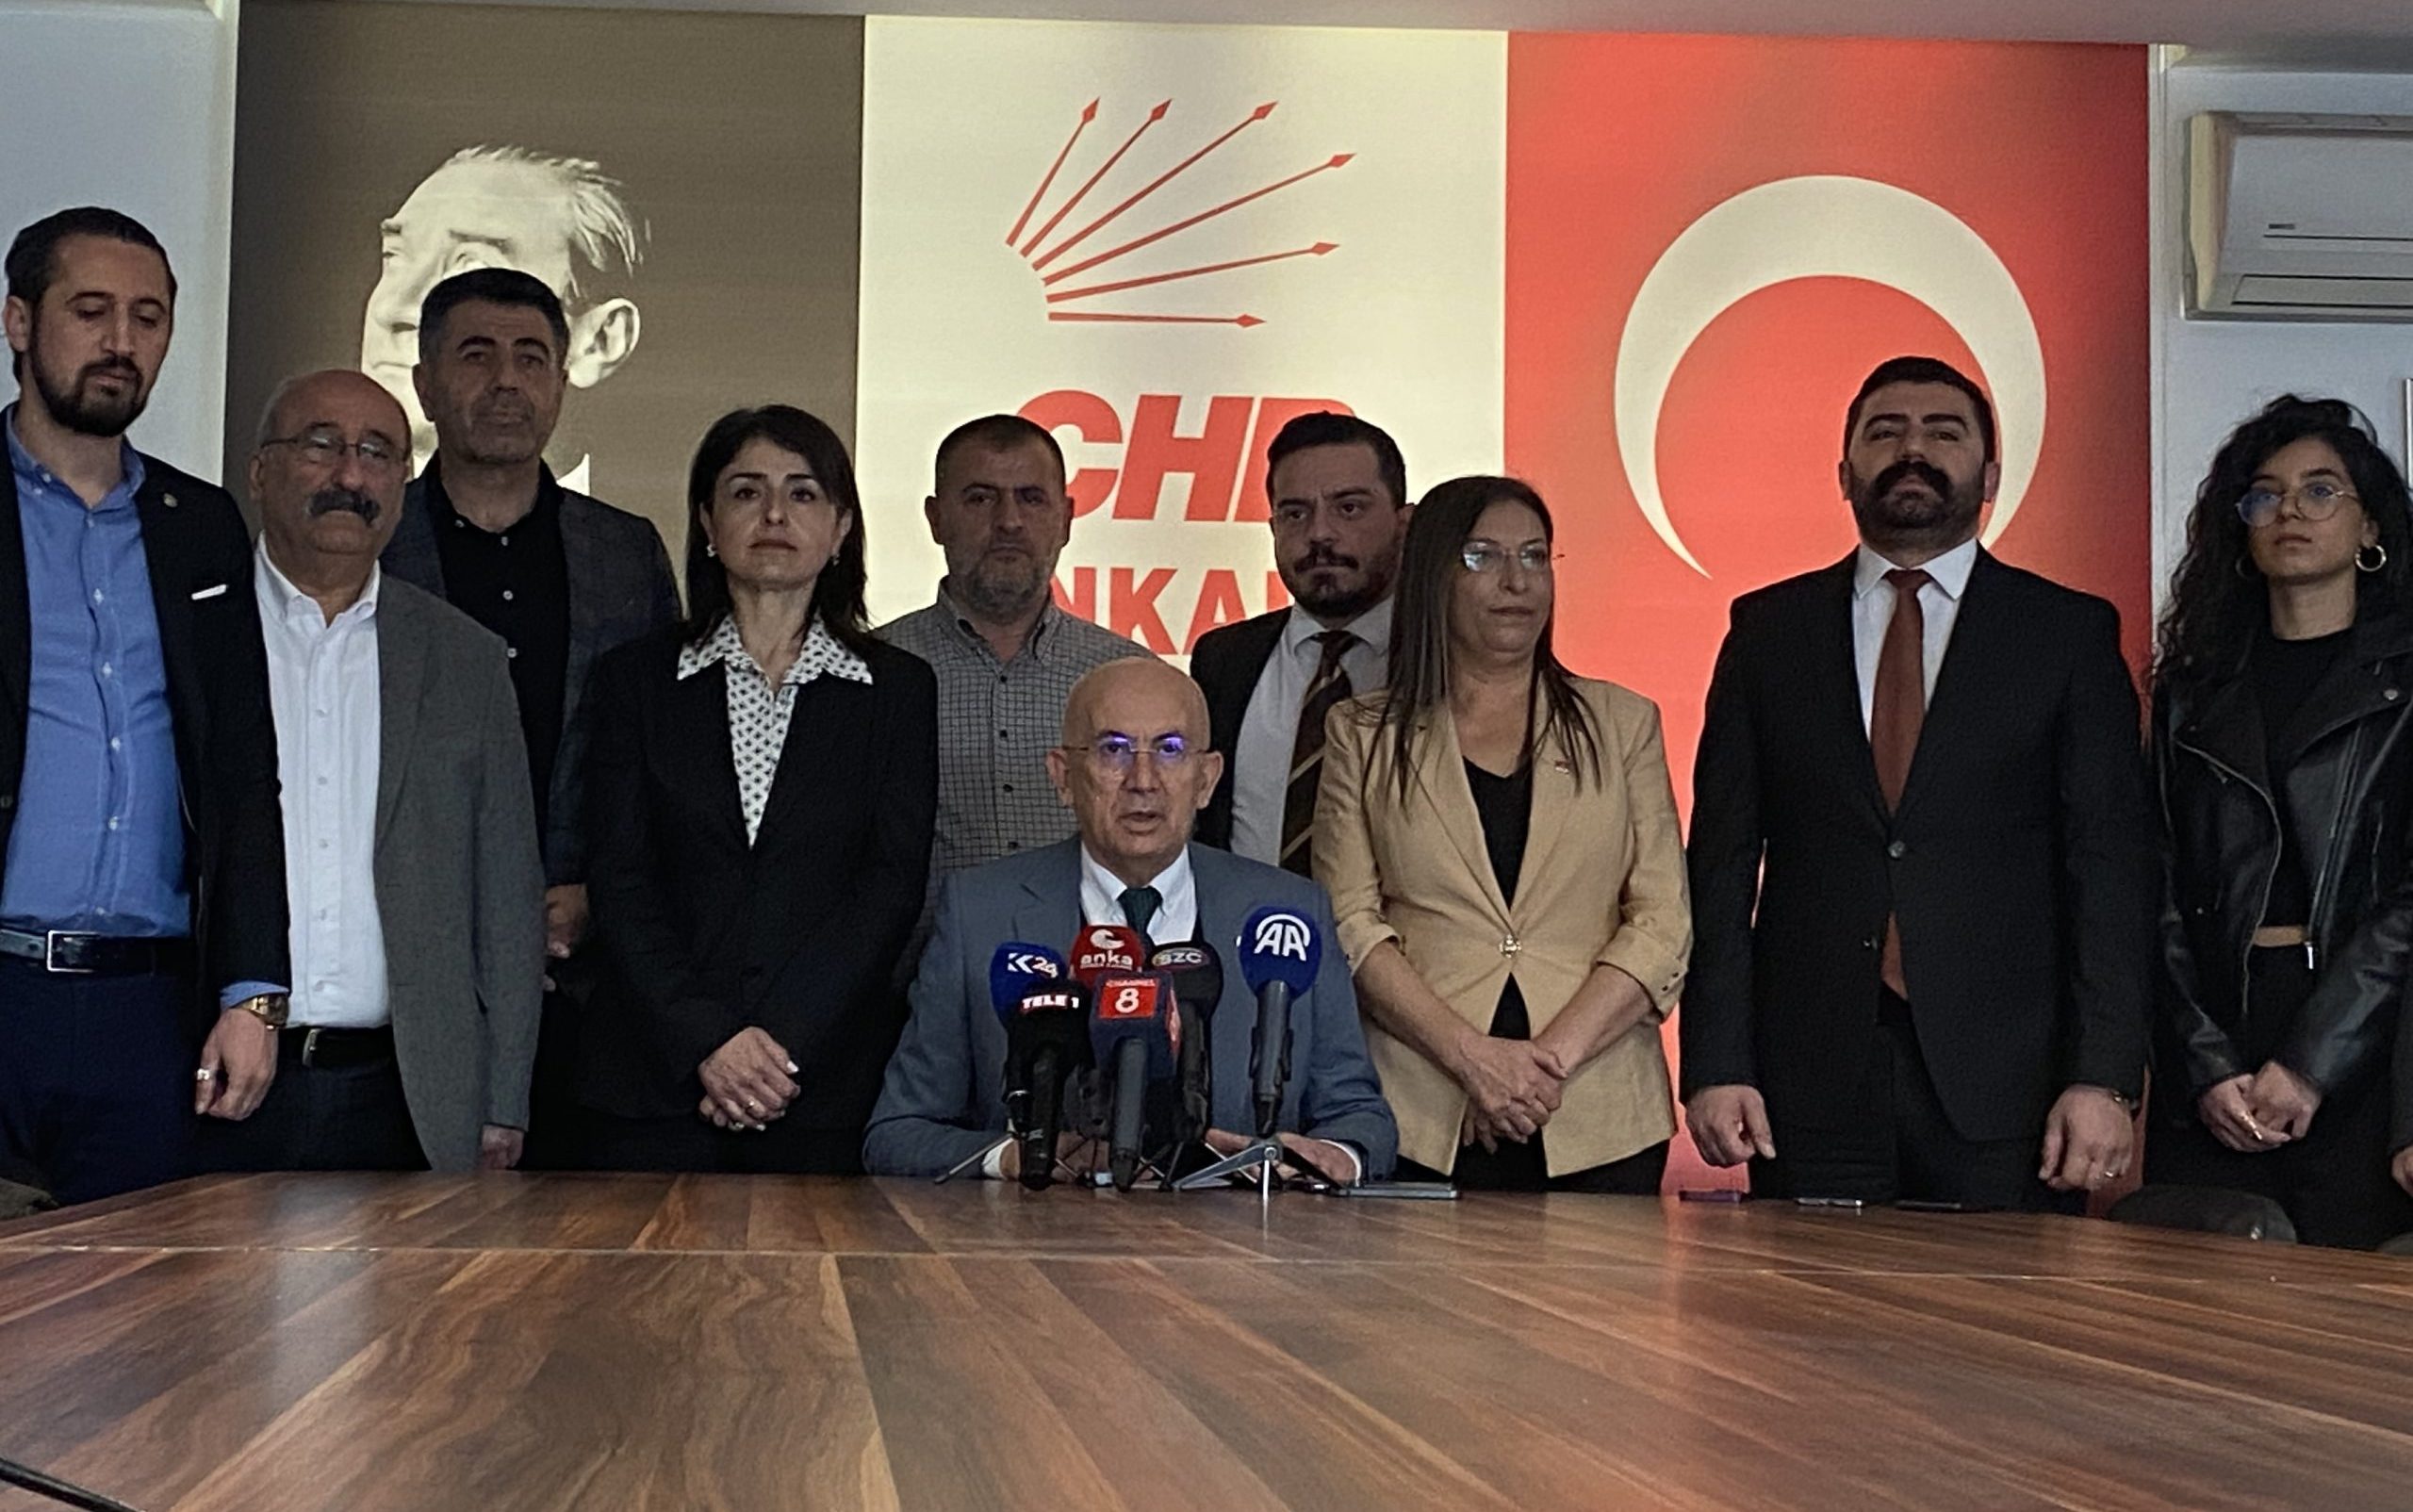 CHP Ankara İl Başkanı Erkol'dan, Meral Akşener'in sözlerine tepki: Nezaket sınırlarını zorlayan bir açıklama